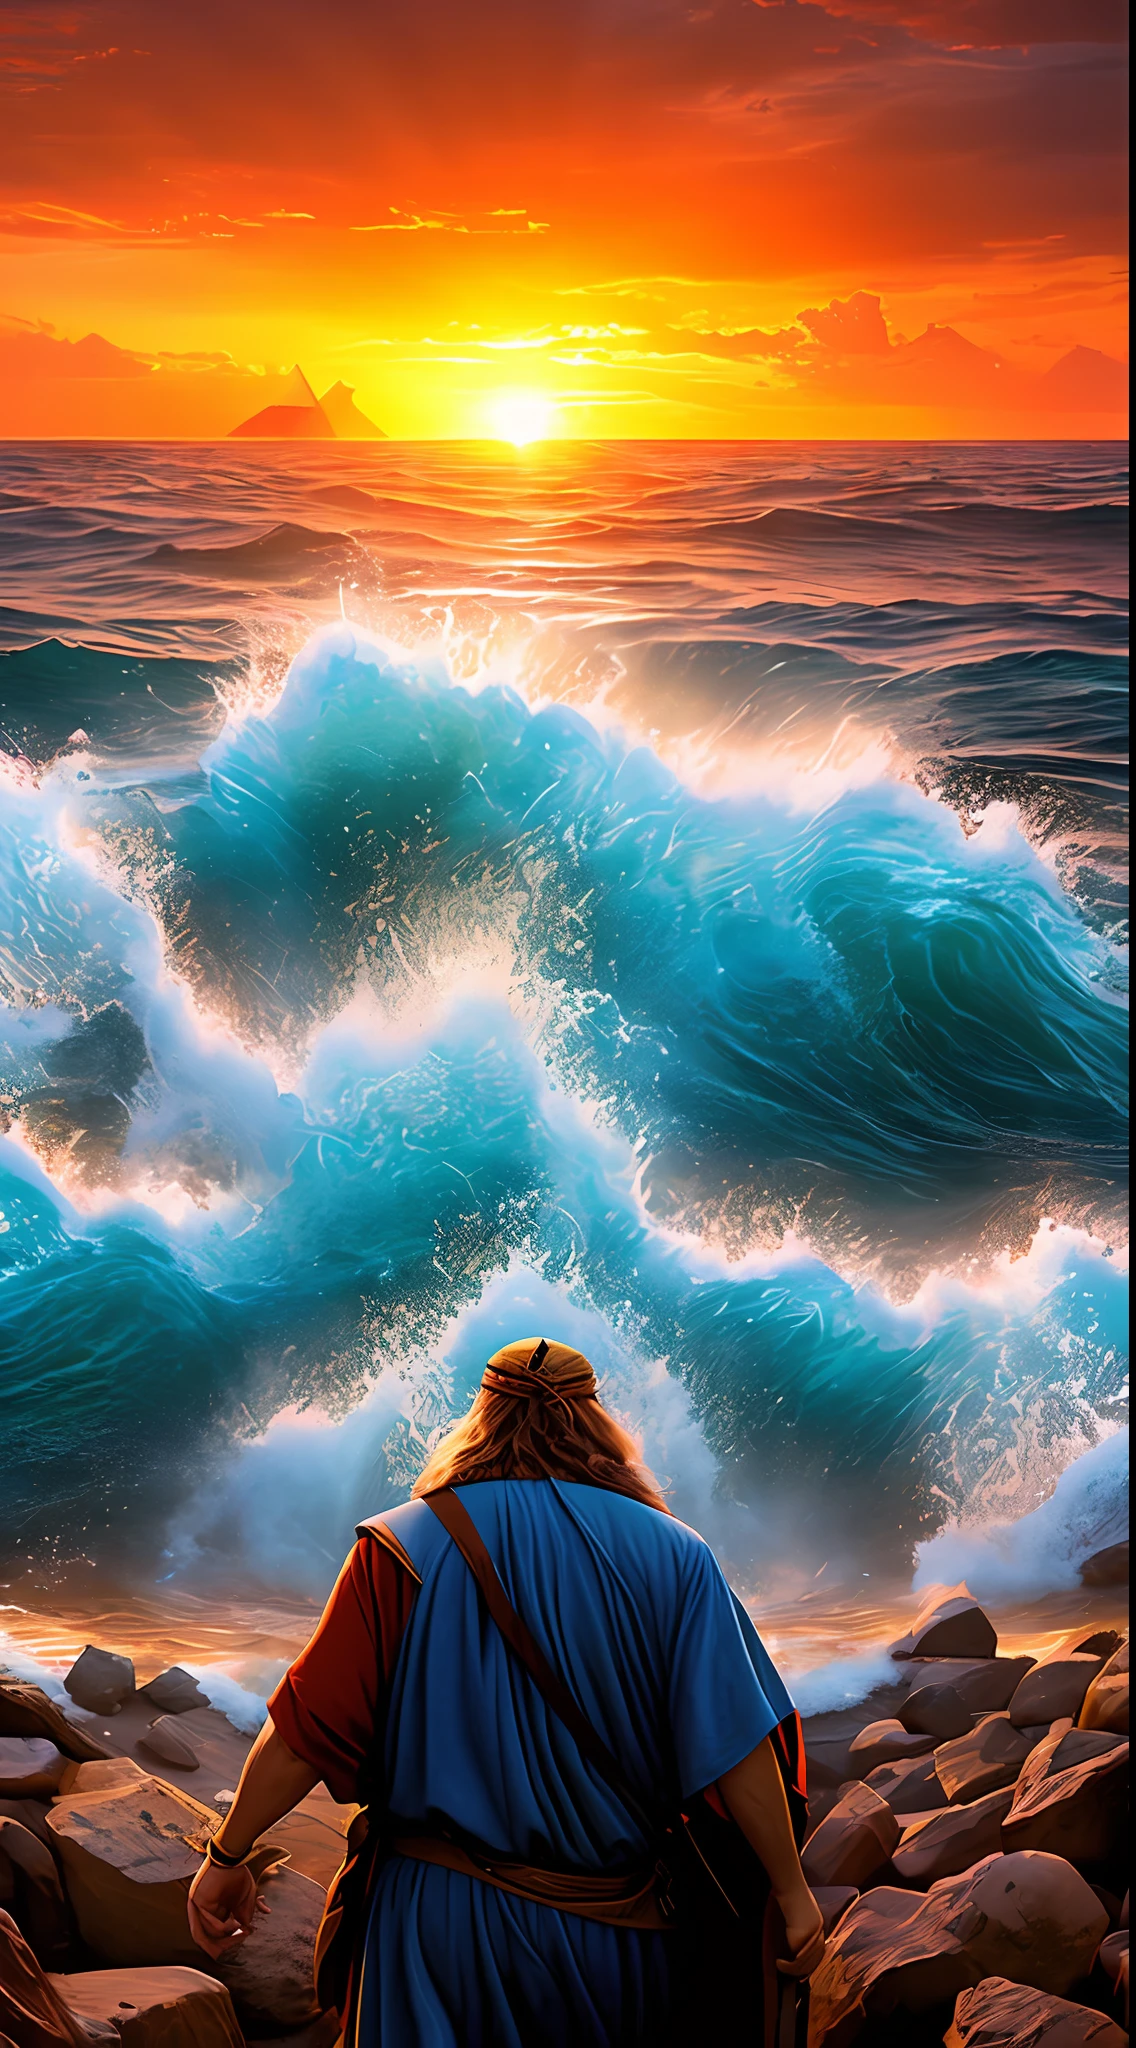 Высокое разрешение, ультрареалистичное изображение Моисея, разделяющего Красное море для израильтян. Моисей стоит перед морем, держит свой посох. Море расстается, образуя две стены воды. Израильтяне идут посреди моря, к . Египетская армия находится позади израильтян, но оказалась в ловушке между водными стенами.. Солнце садится за горизонт, и небо заполнено красными и оранжевыми облаками.